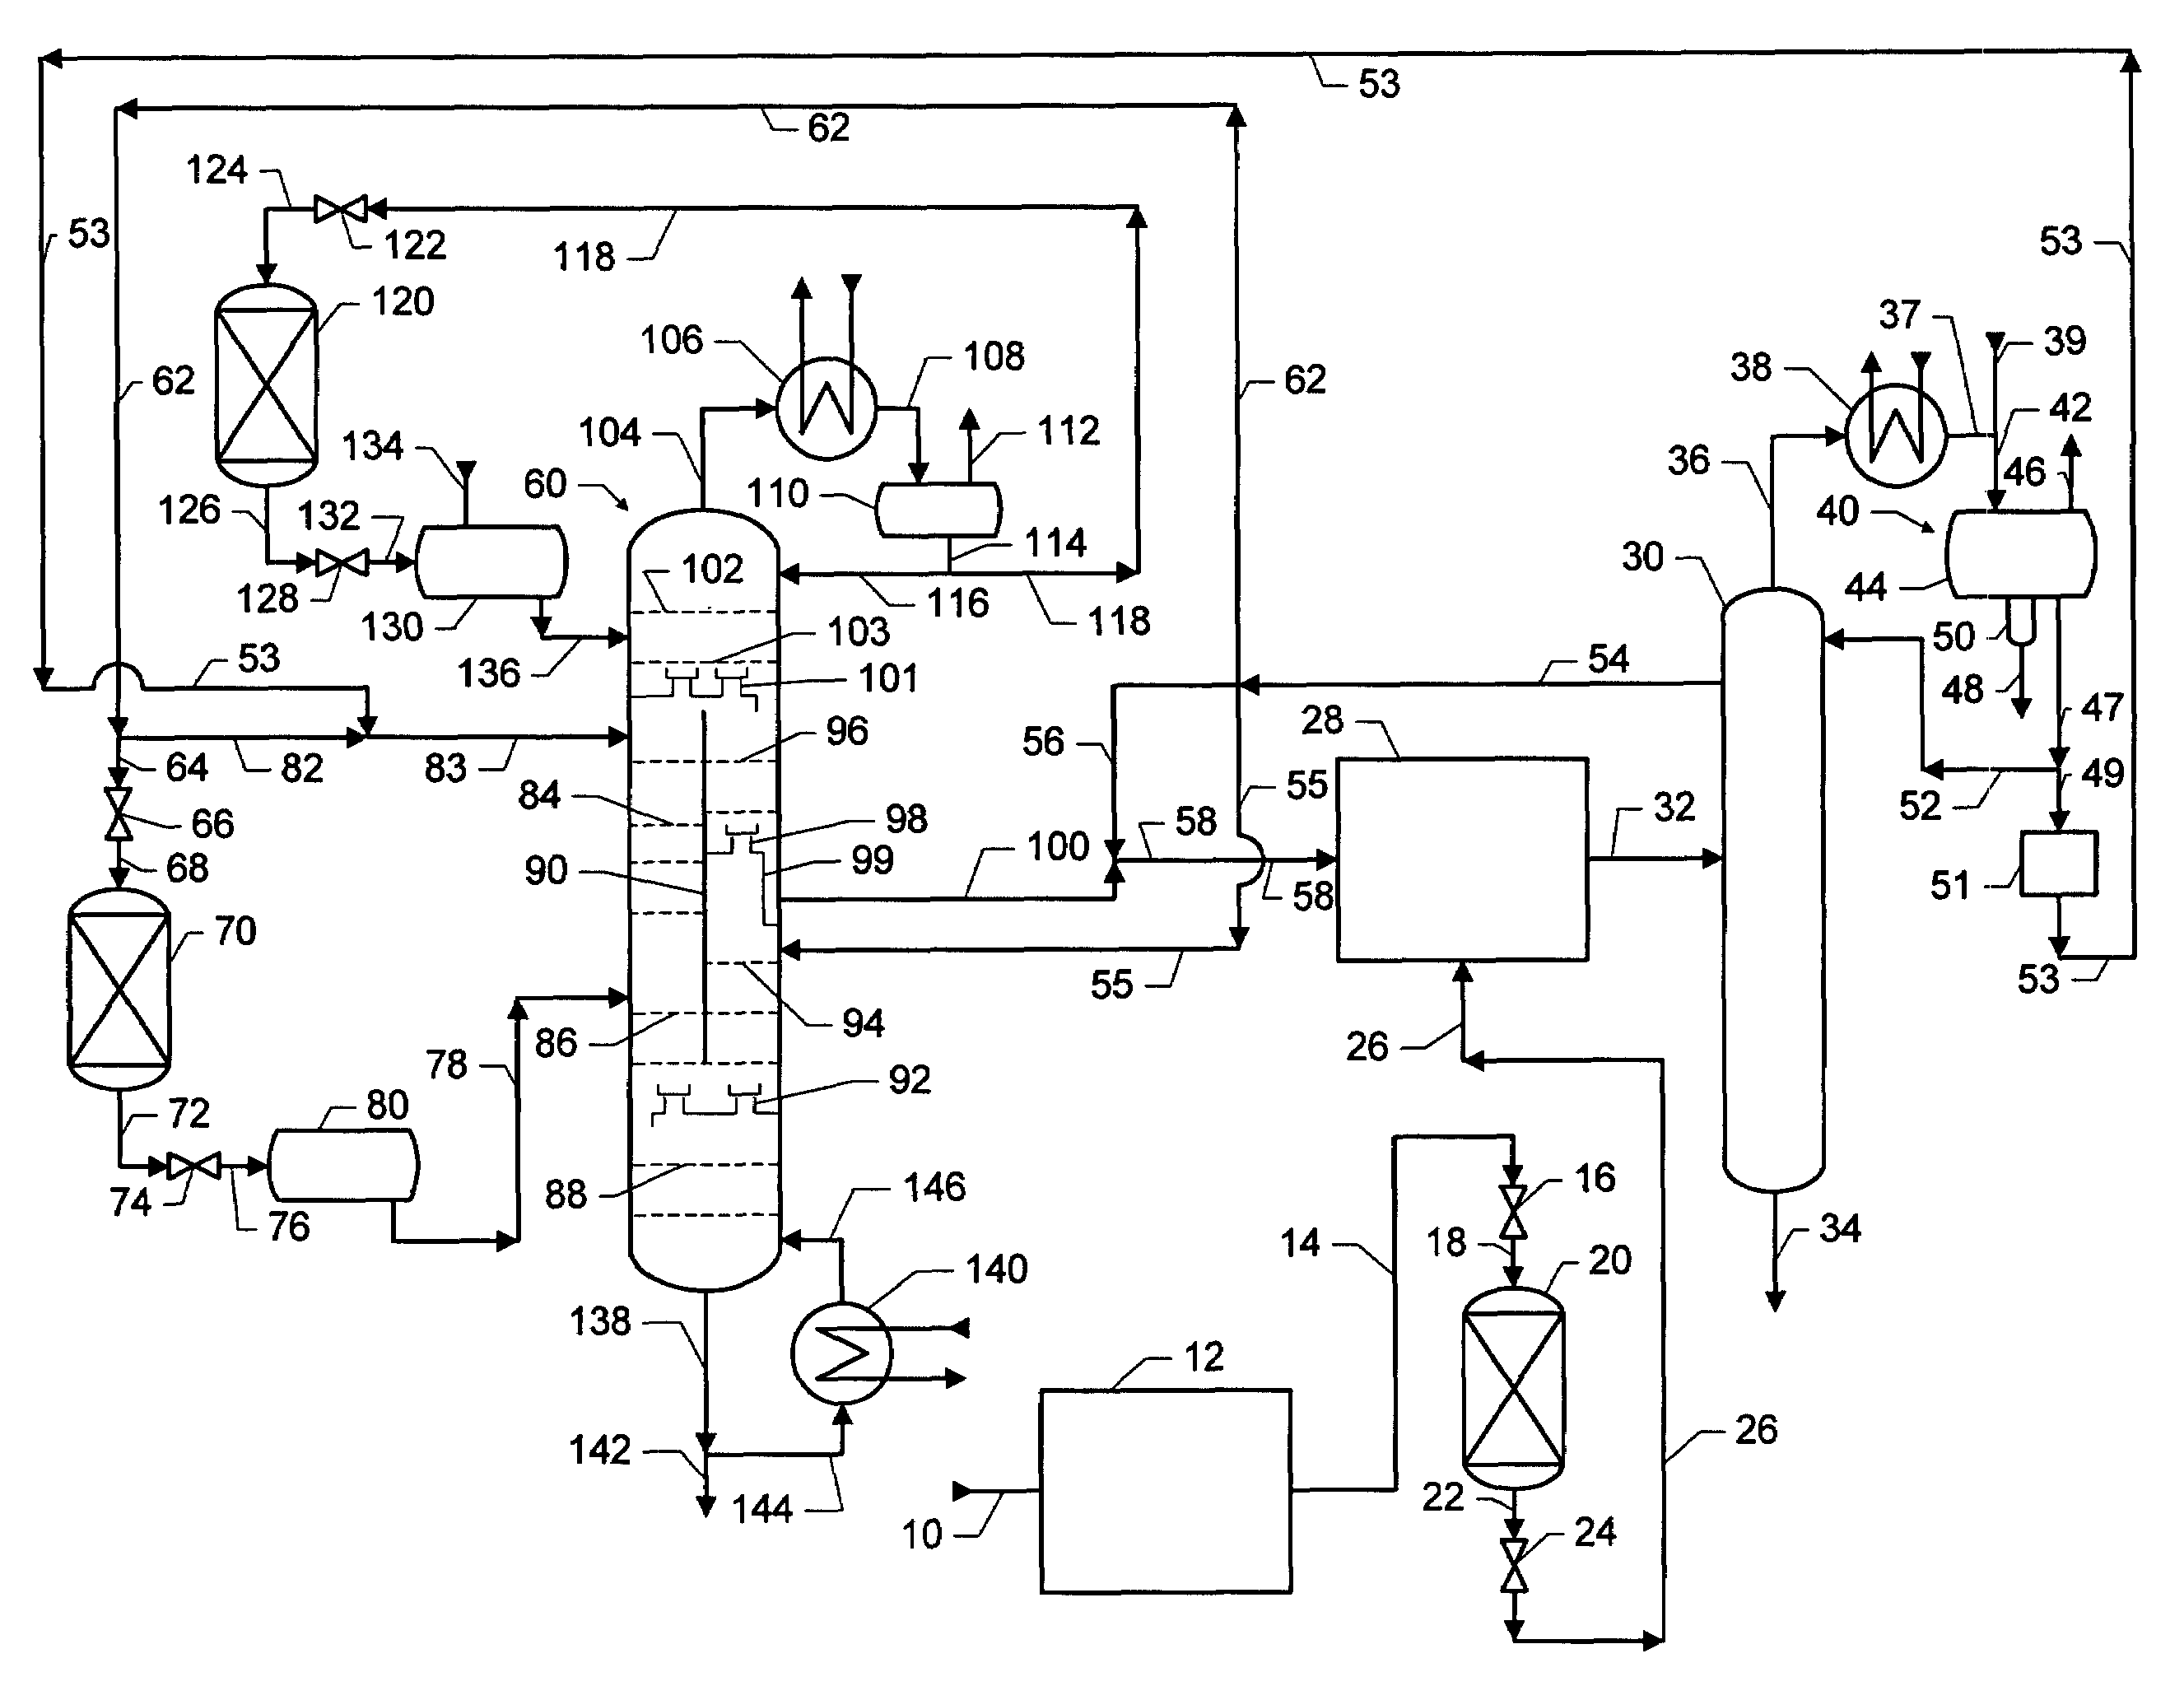 Dividing wall distillation column control apparatus